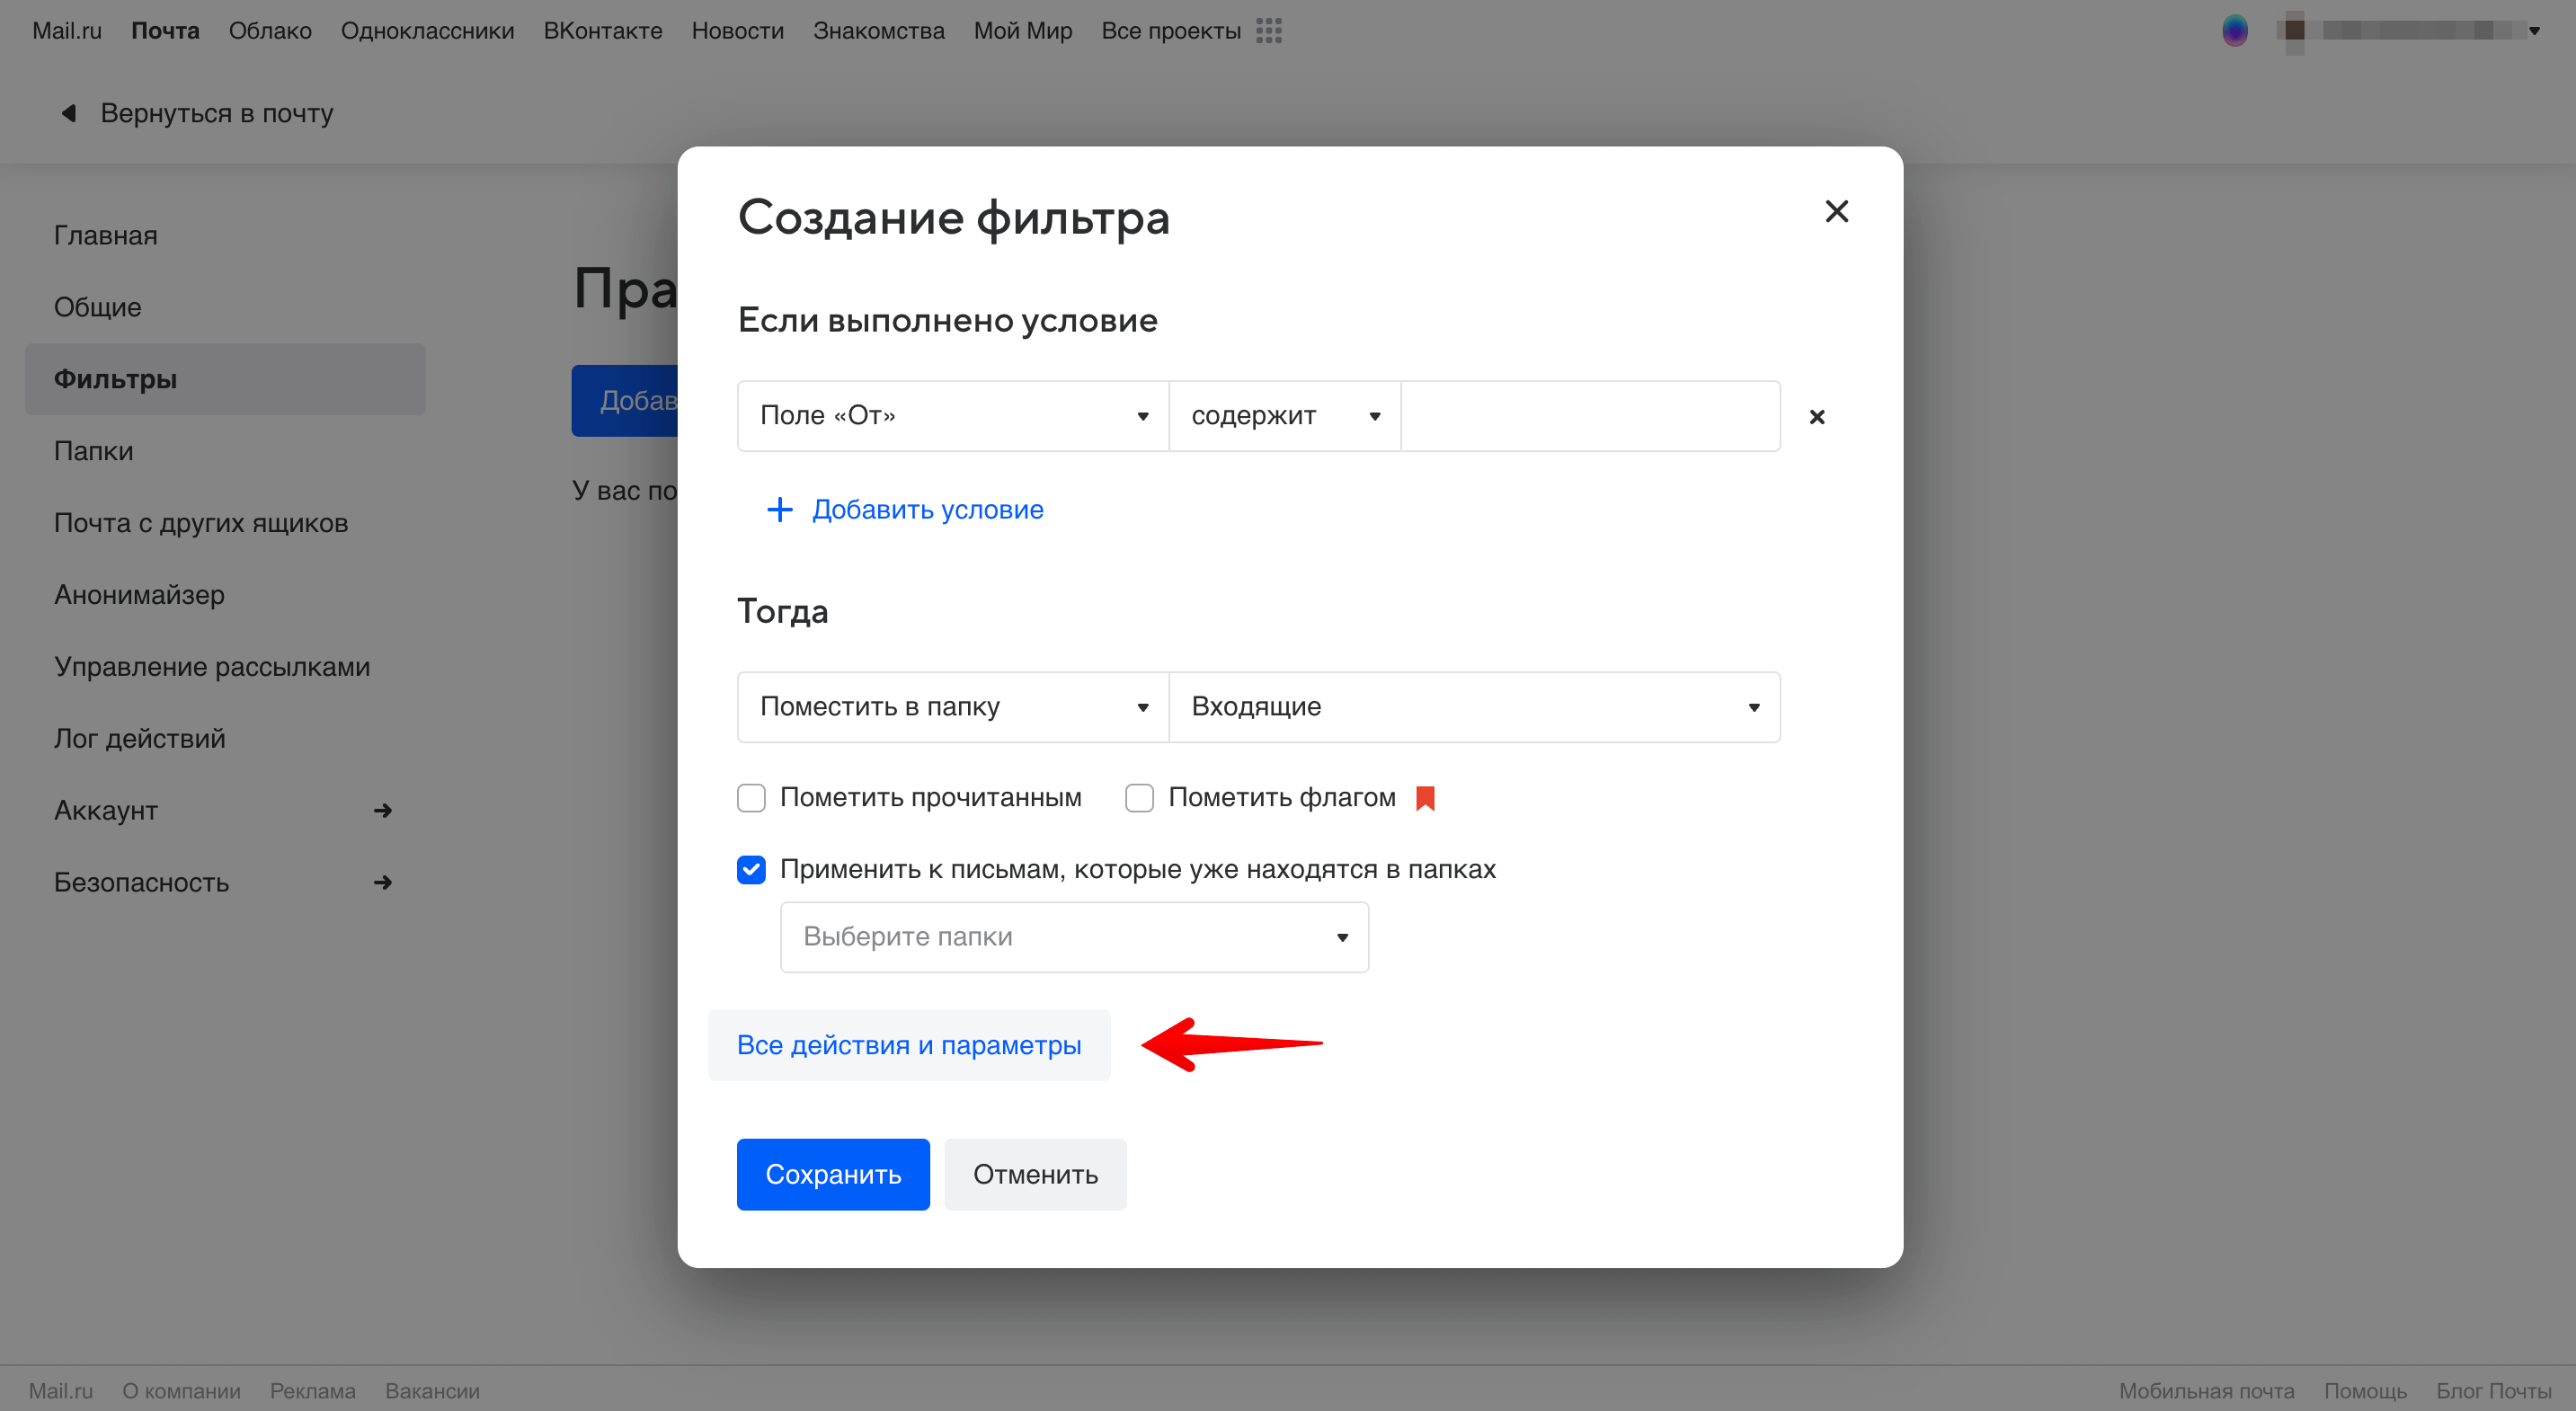 Mail.ru - все параметры фильтра.png